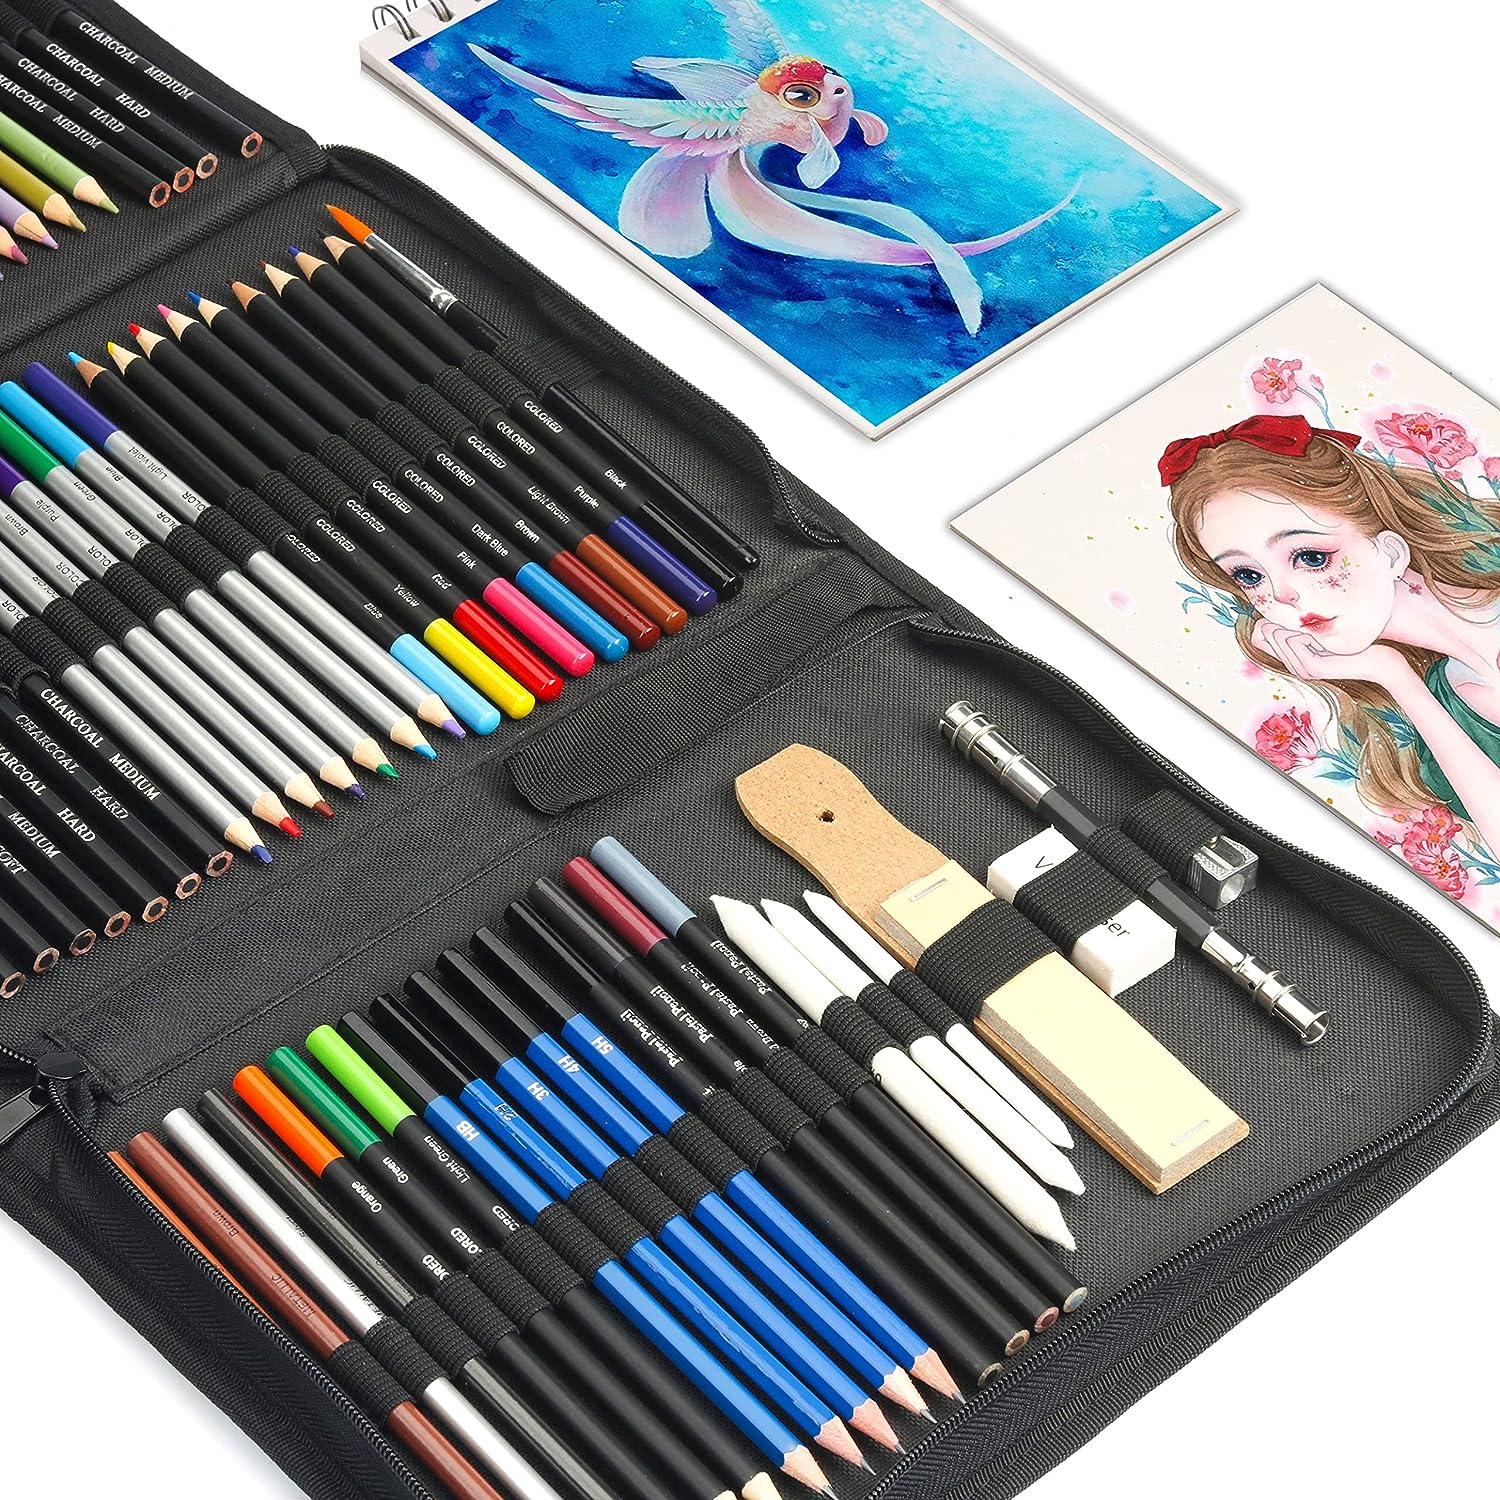  82 Pack Drawing Set Sketching Kit, Pro Art Supplies